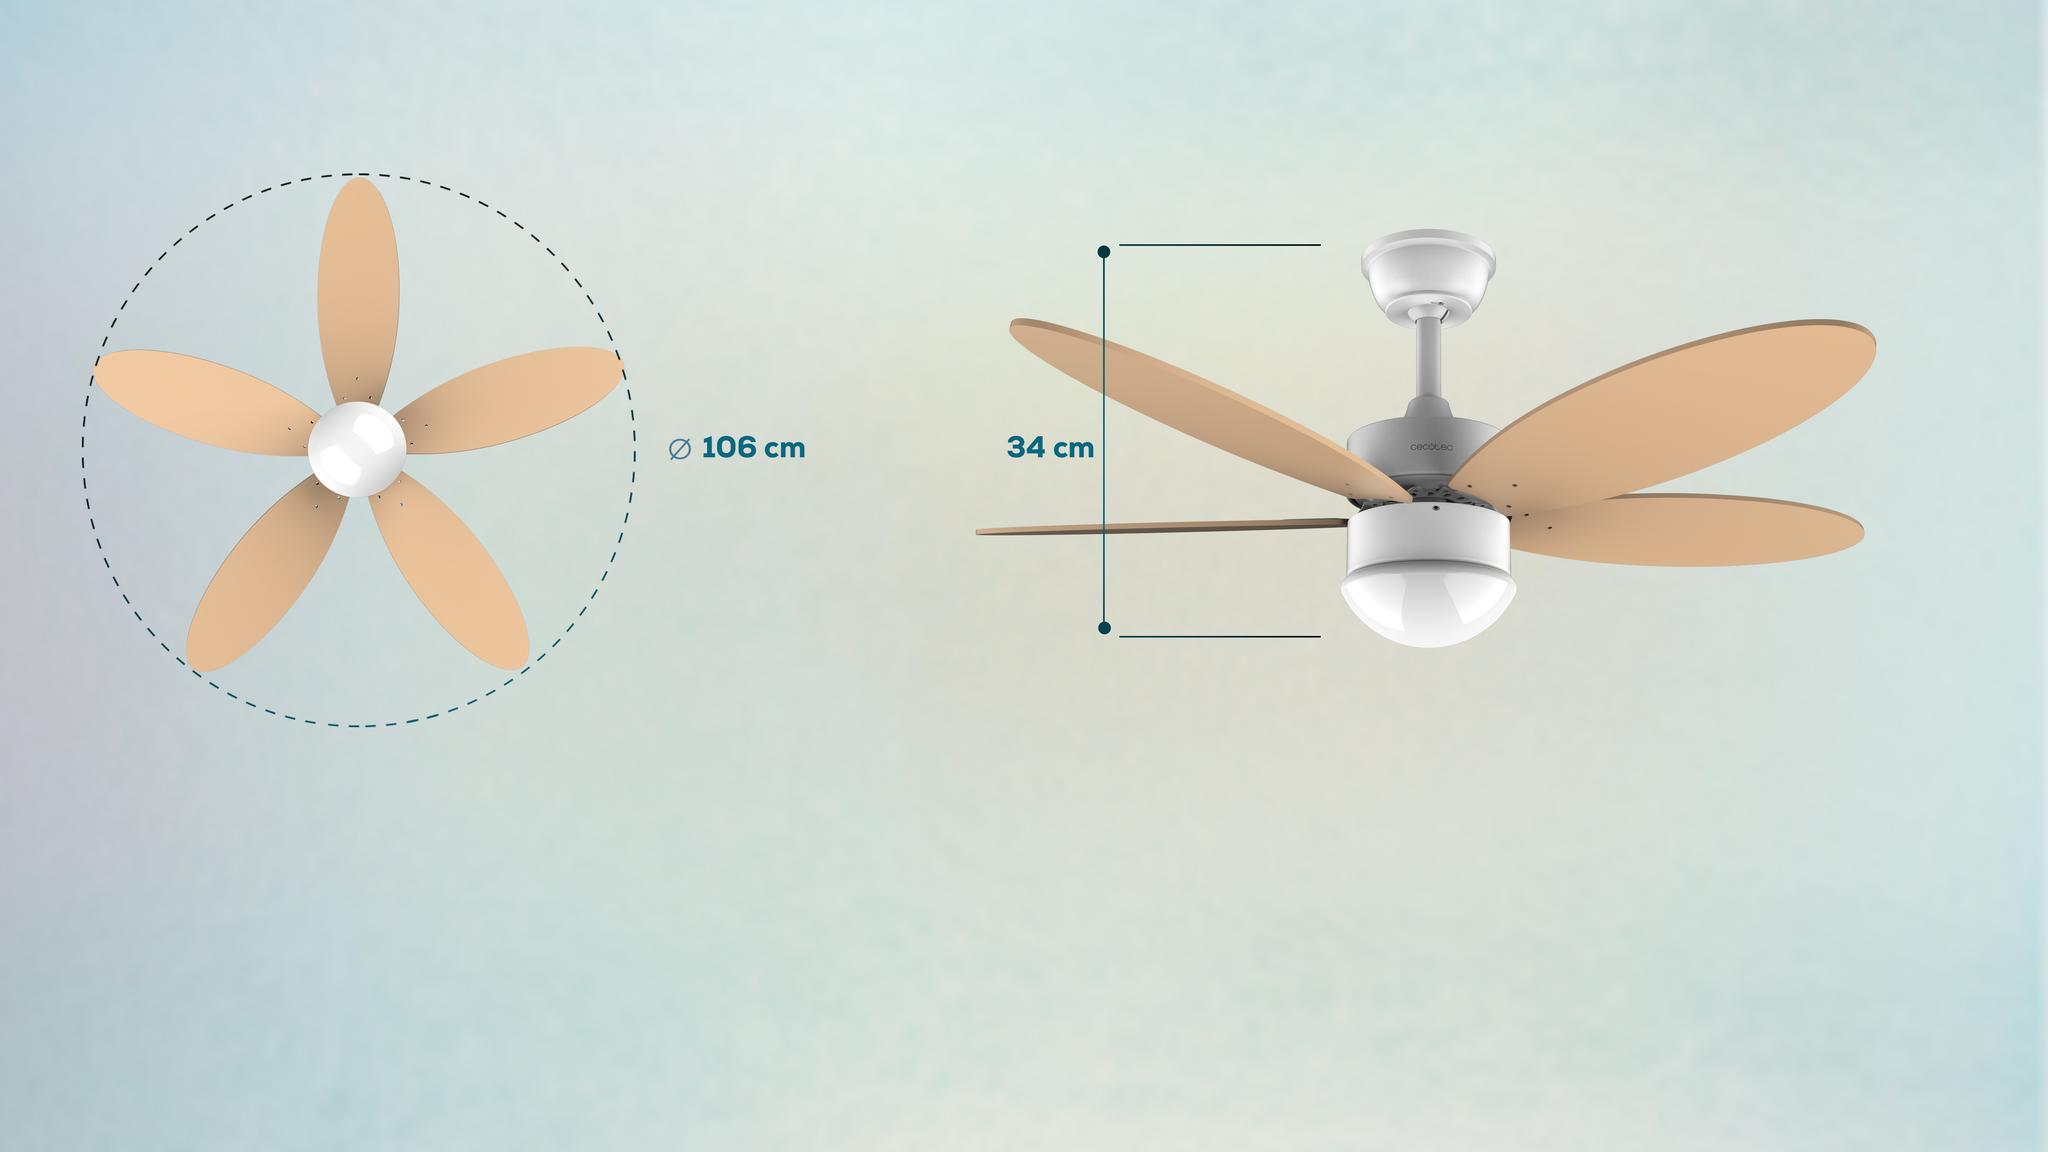 El ventilador cuenta con 5 aspas aerodinámicas de 42 pulgadas que reparten de forma uniforme y constante un gran flujo de aire.